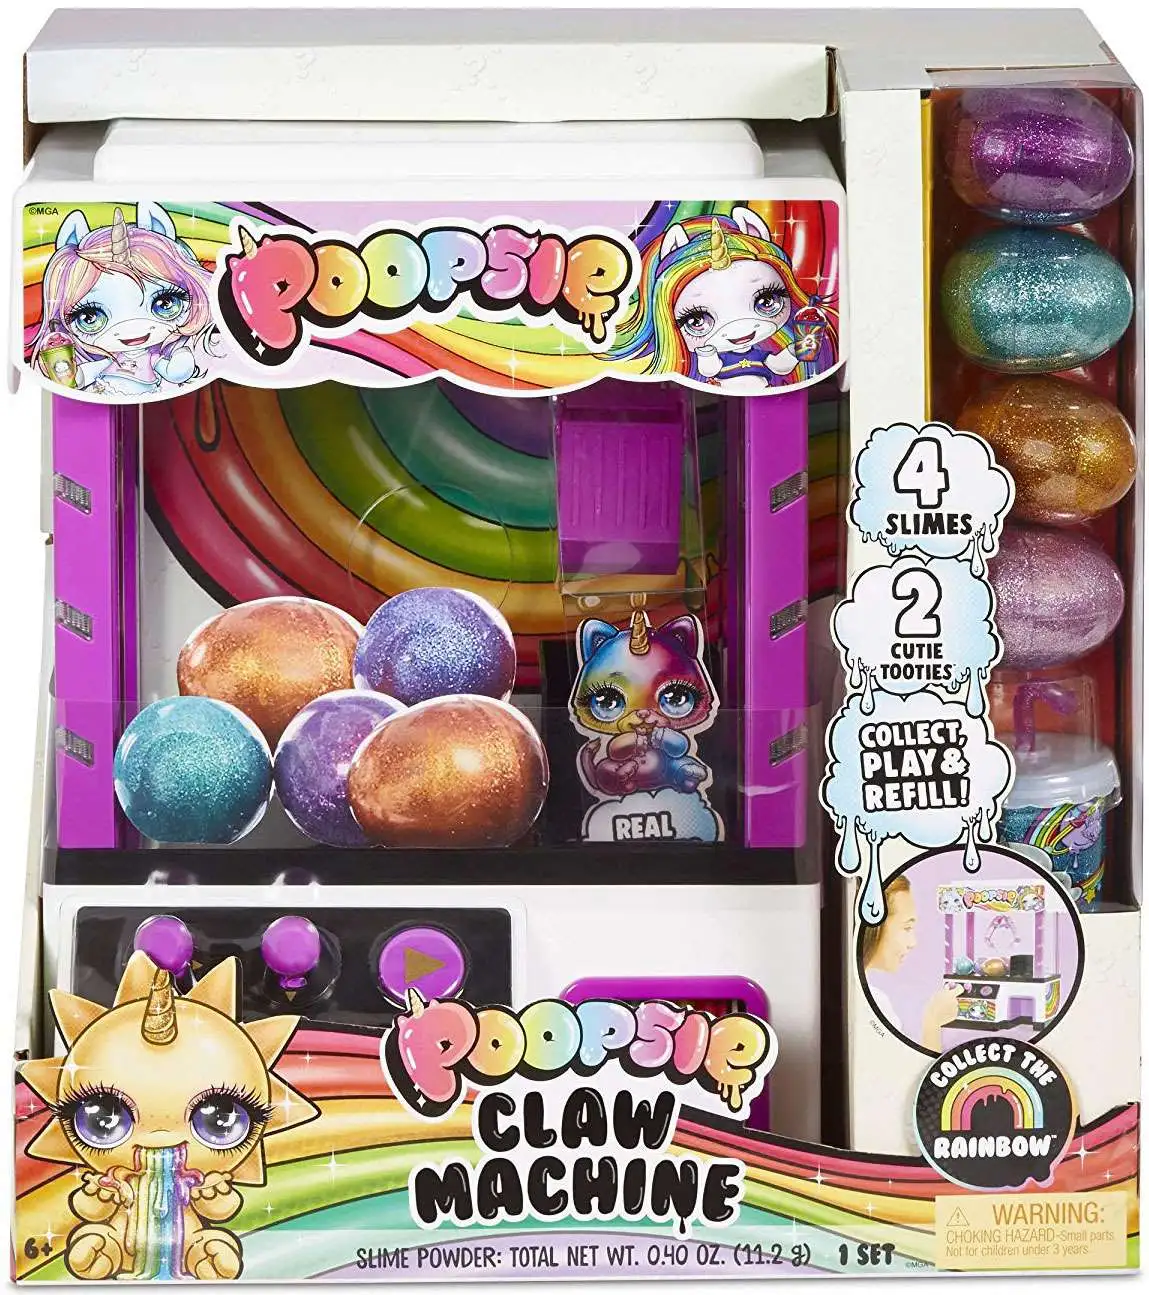 Poopsie Slime Surprise Poopsie Claw Machine Playset Toy MGA